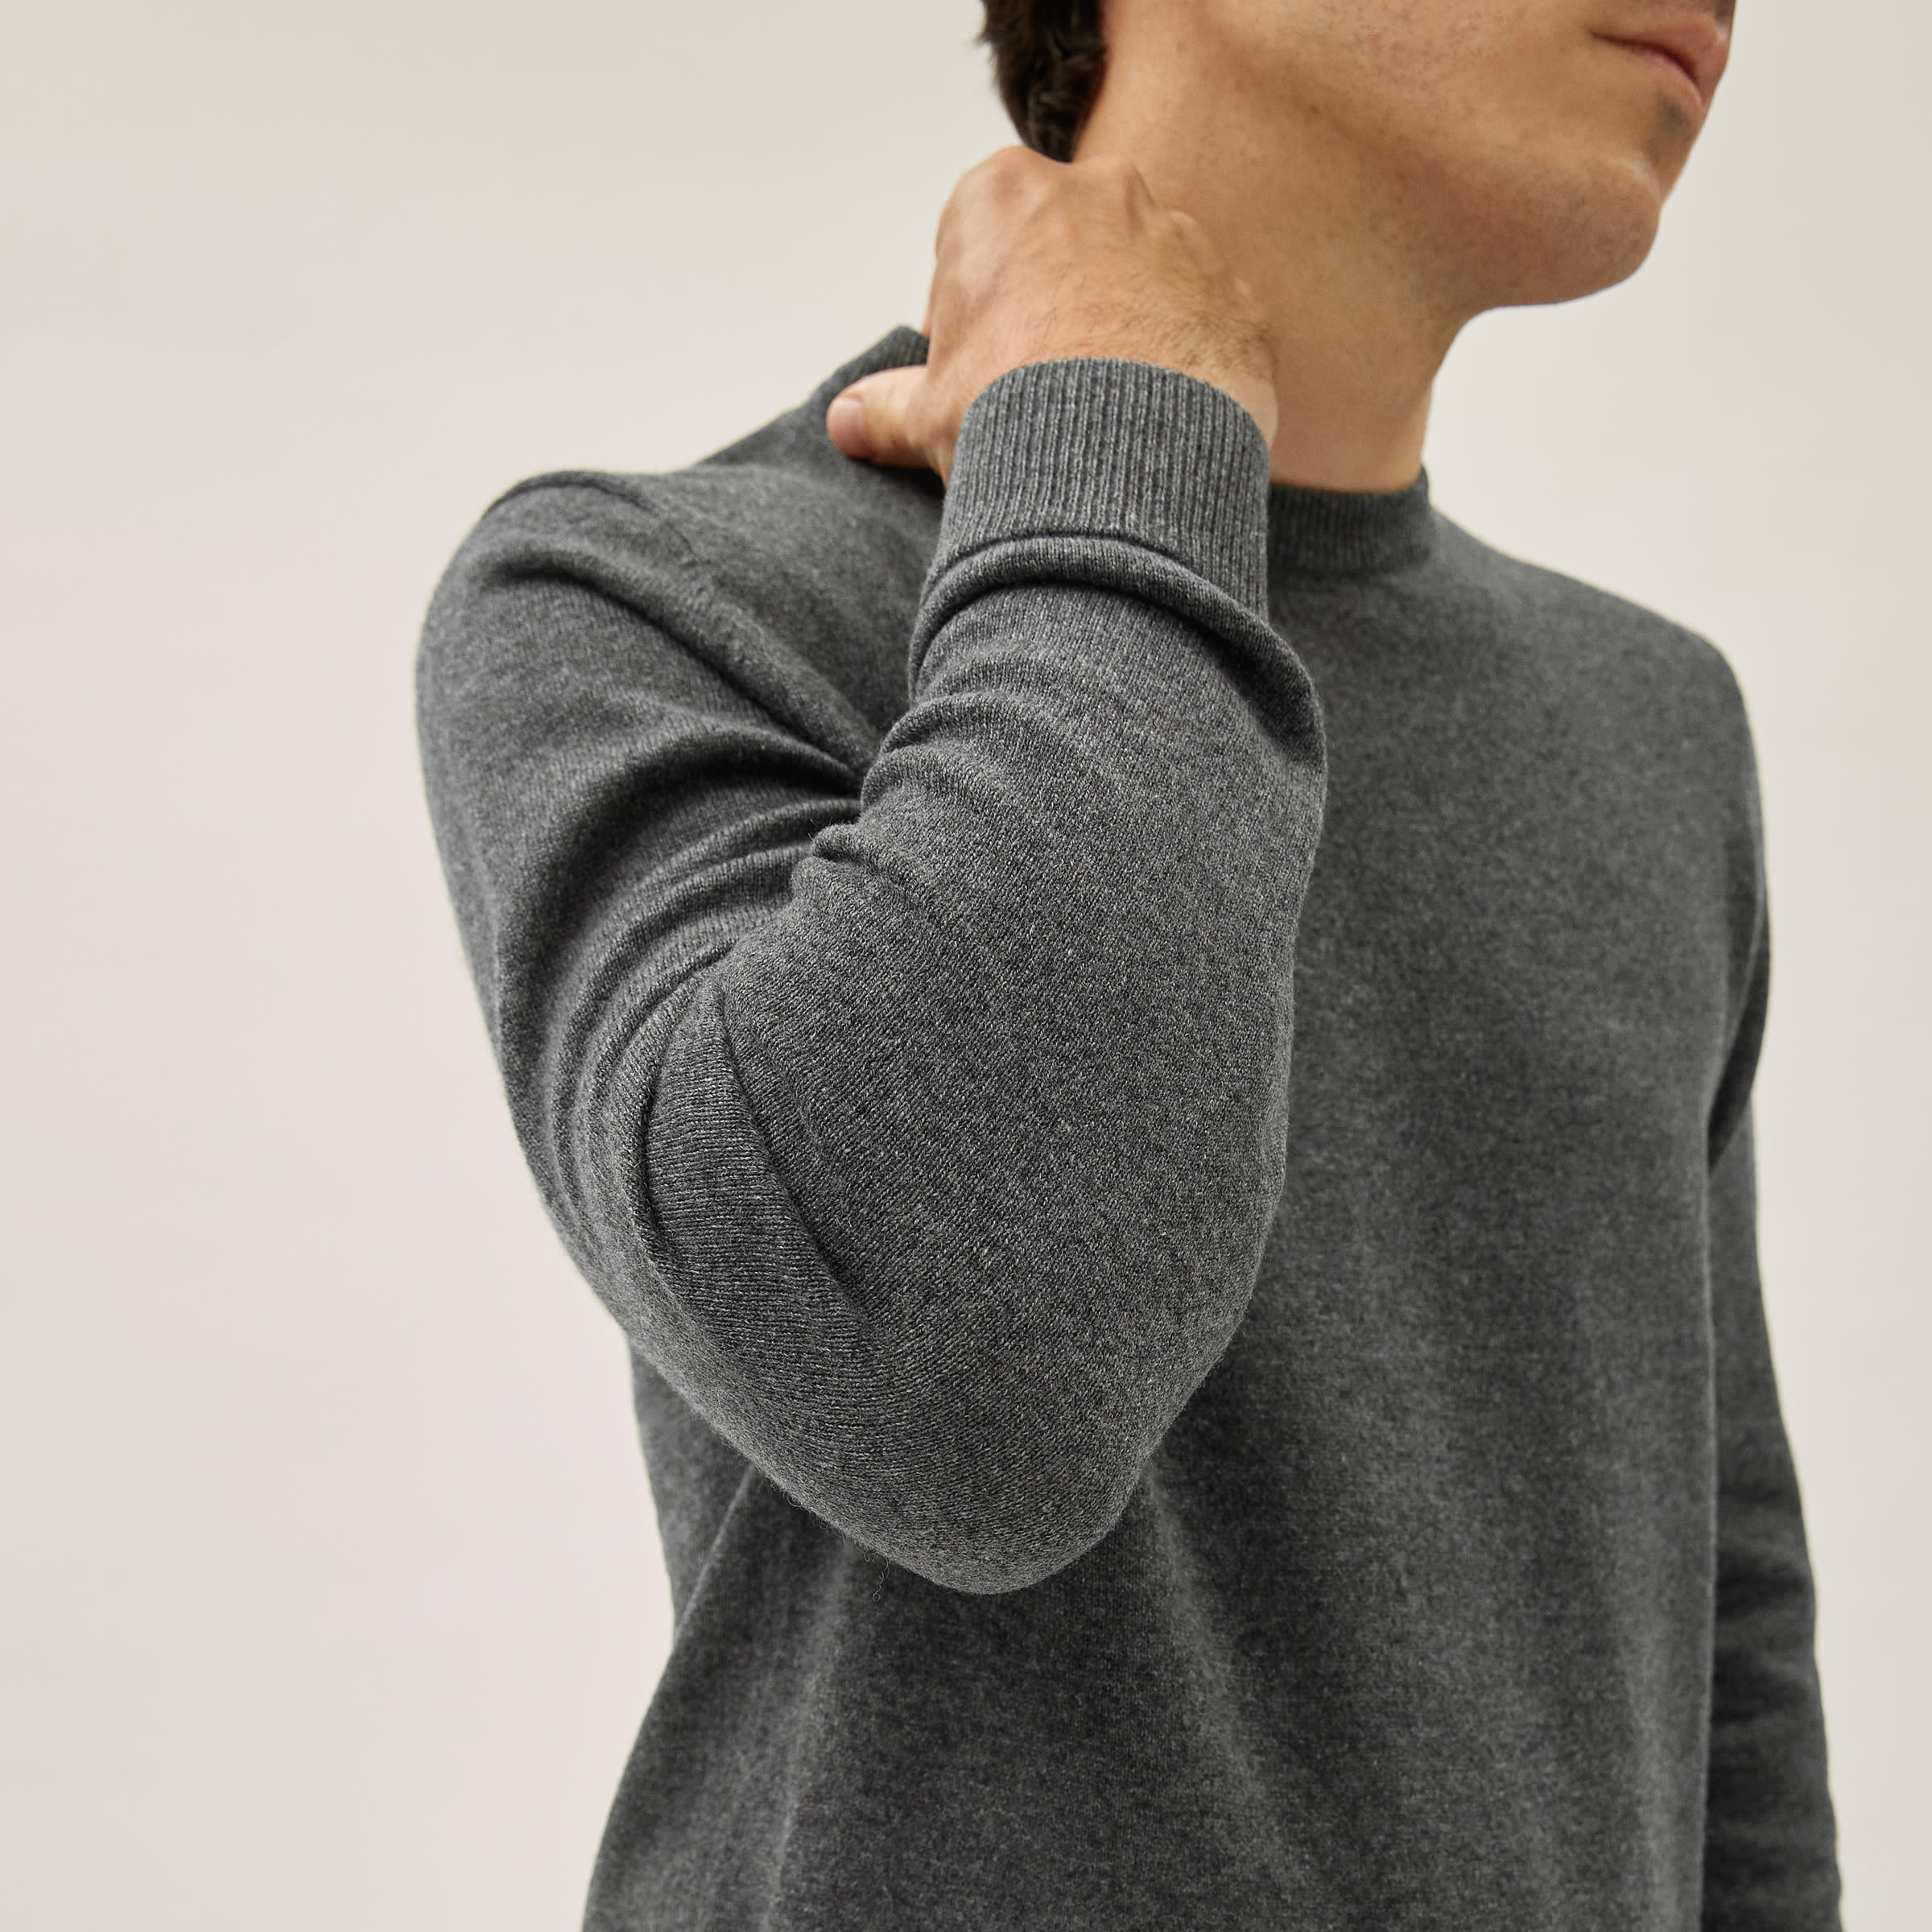 J Crew Wool blend light weight sweater pullover boyfriend beige brown v-neck $78